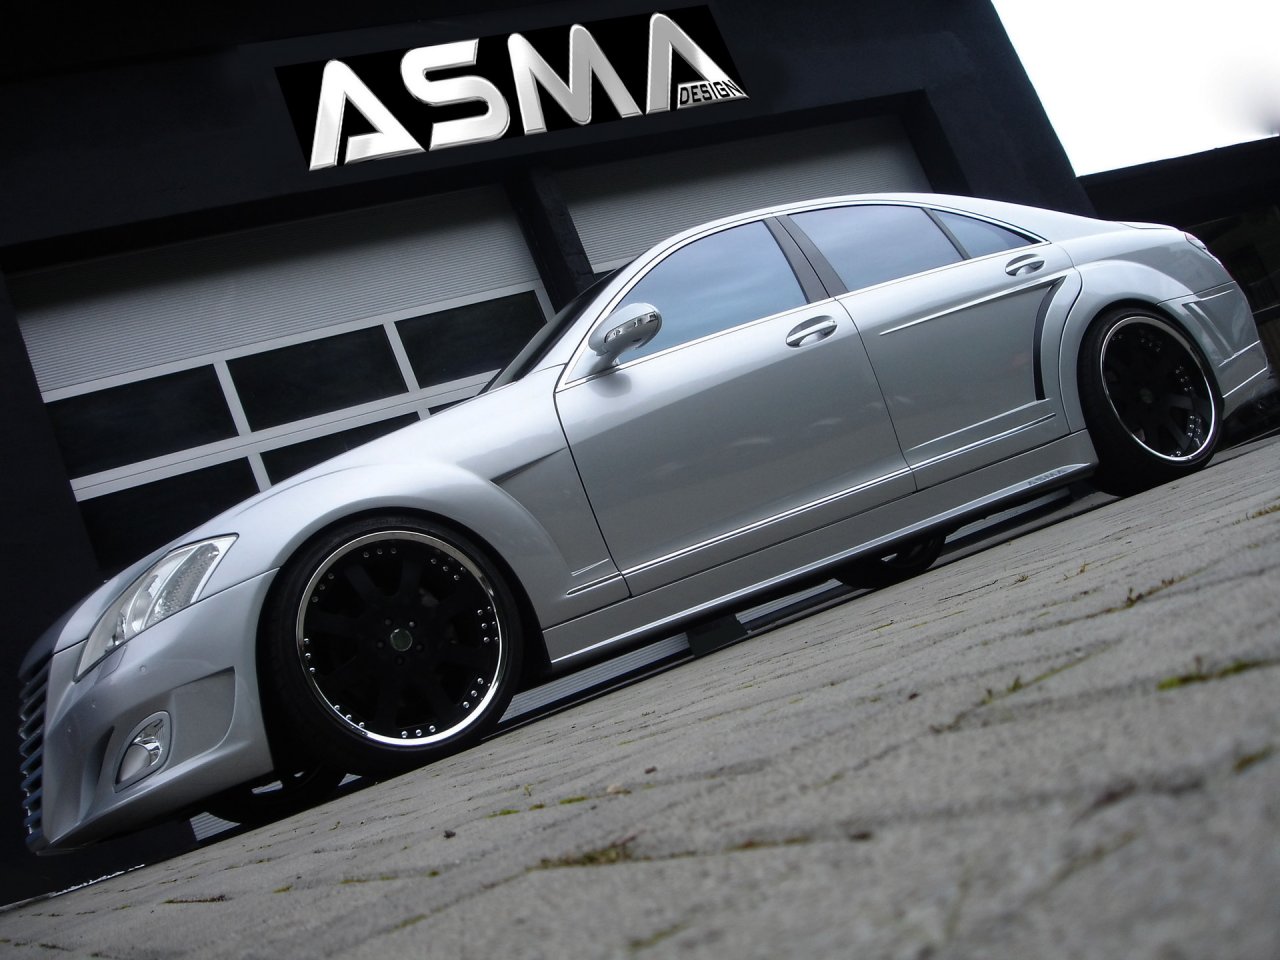 Foto: ASMA Design S Eagle I Widebody based on Mercedes Benz S Class Side Tilt (2007)